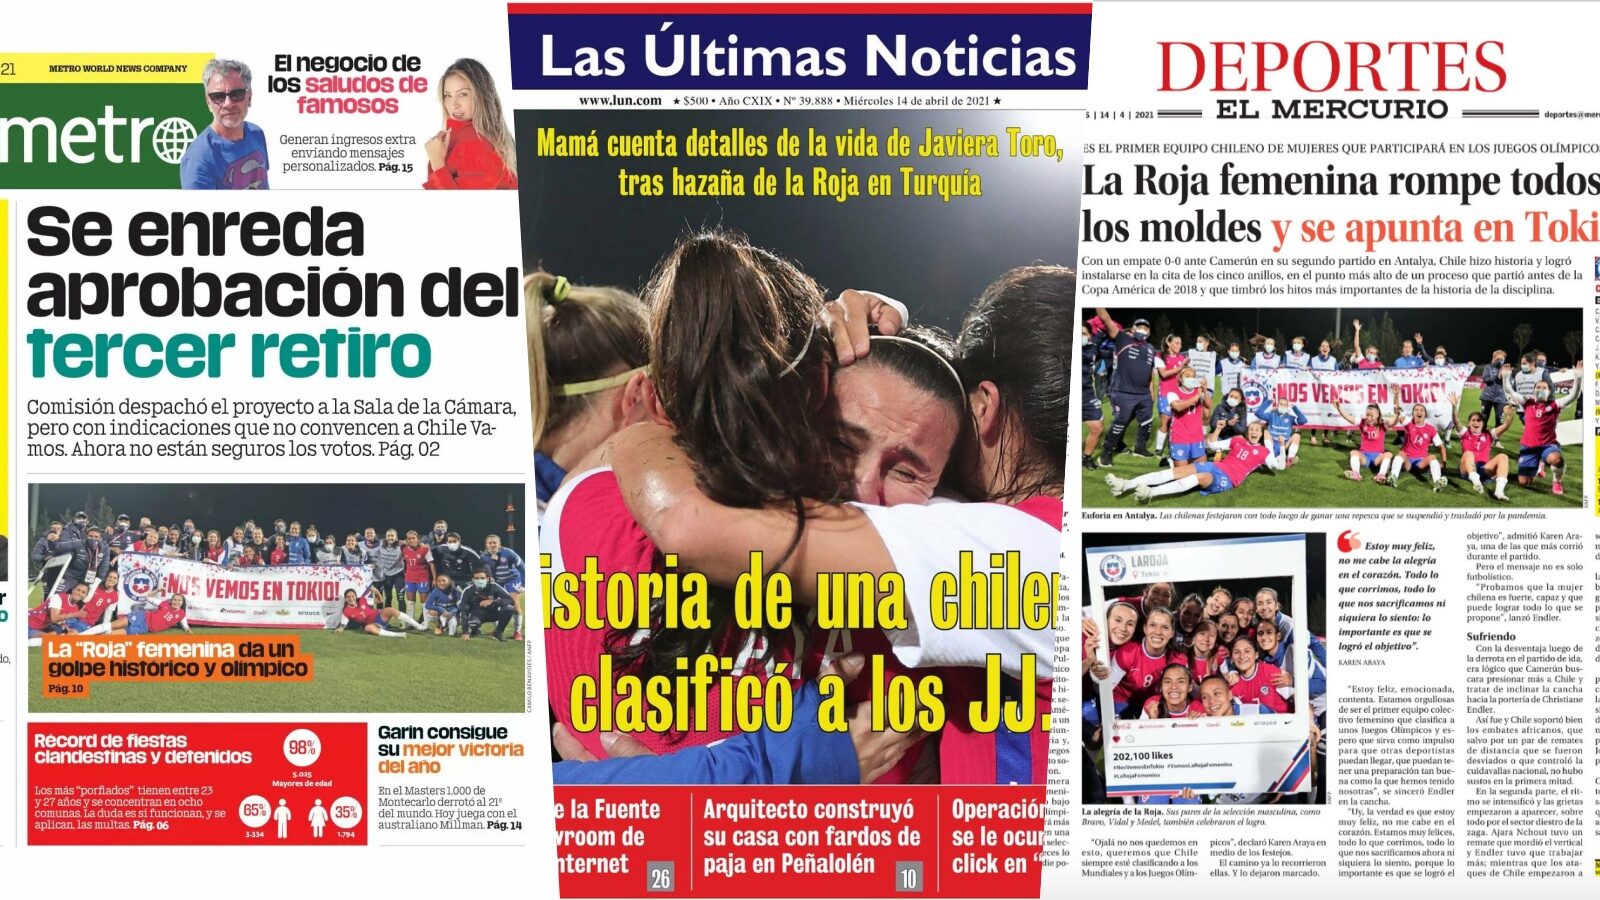 La Roja se toma las portadas en Chile tras clasificarse a los JJOO